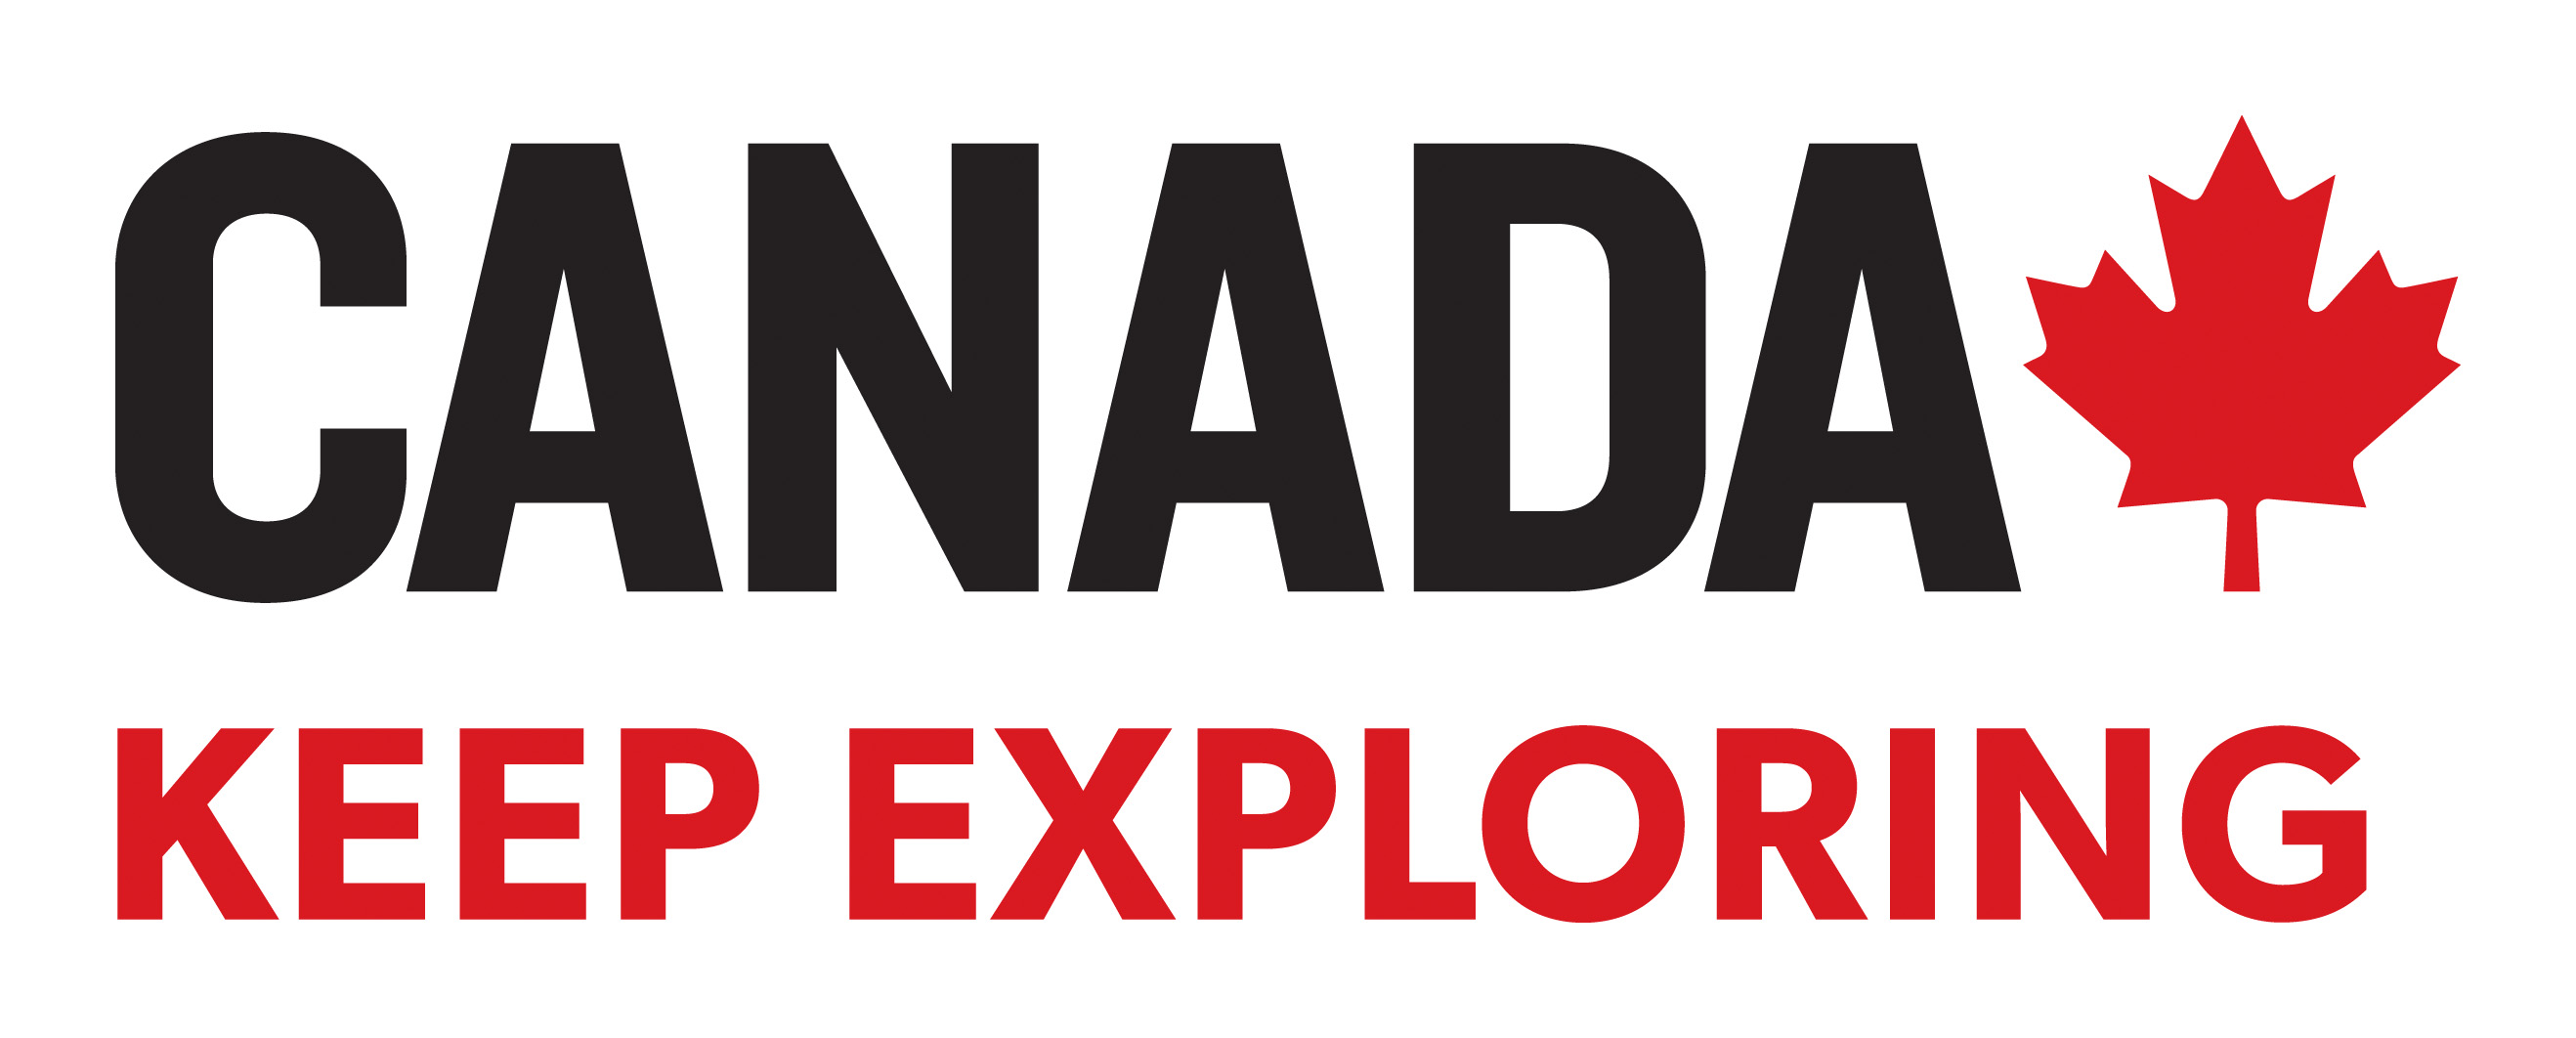 canada tourism company